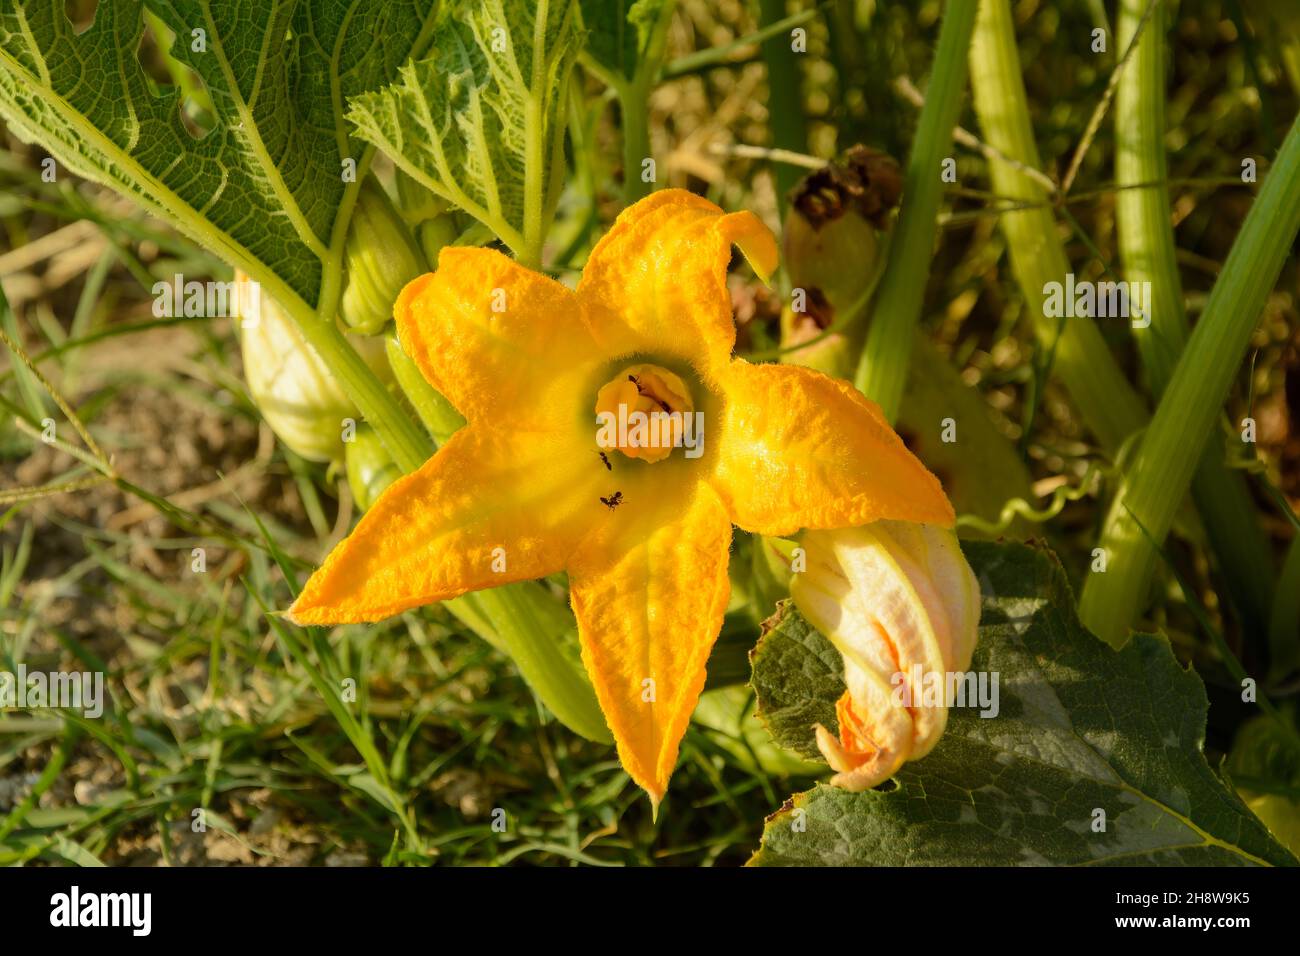 Plante de courgette ou Cucurbita pepo aux fleurs d'orange, fleur de citrouille avec fourmis dans le potager Banque D'Images